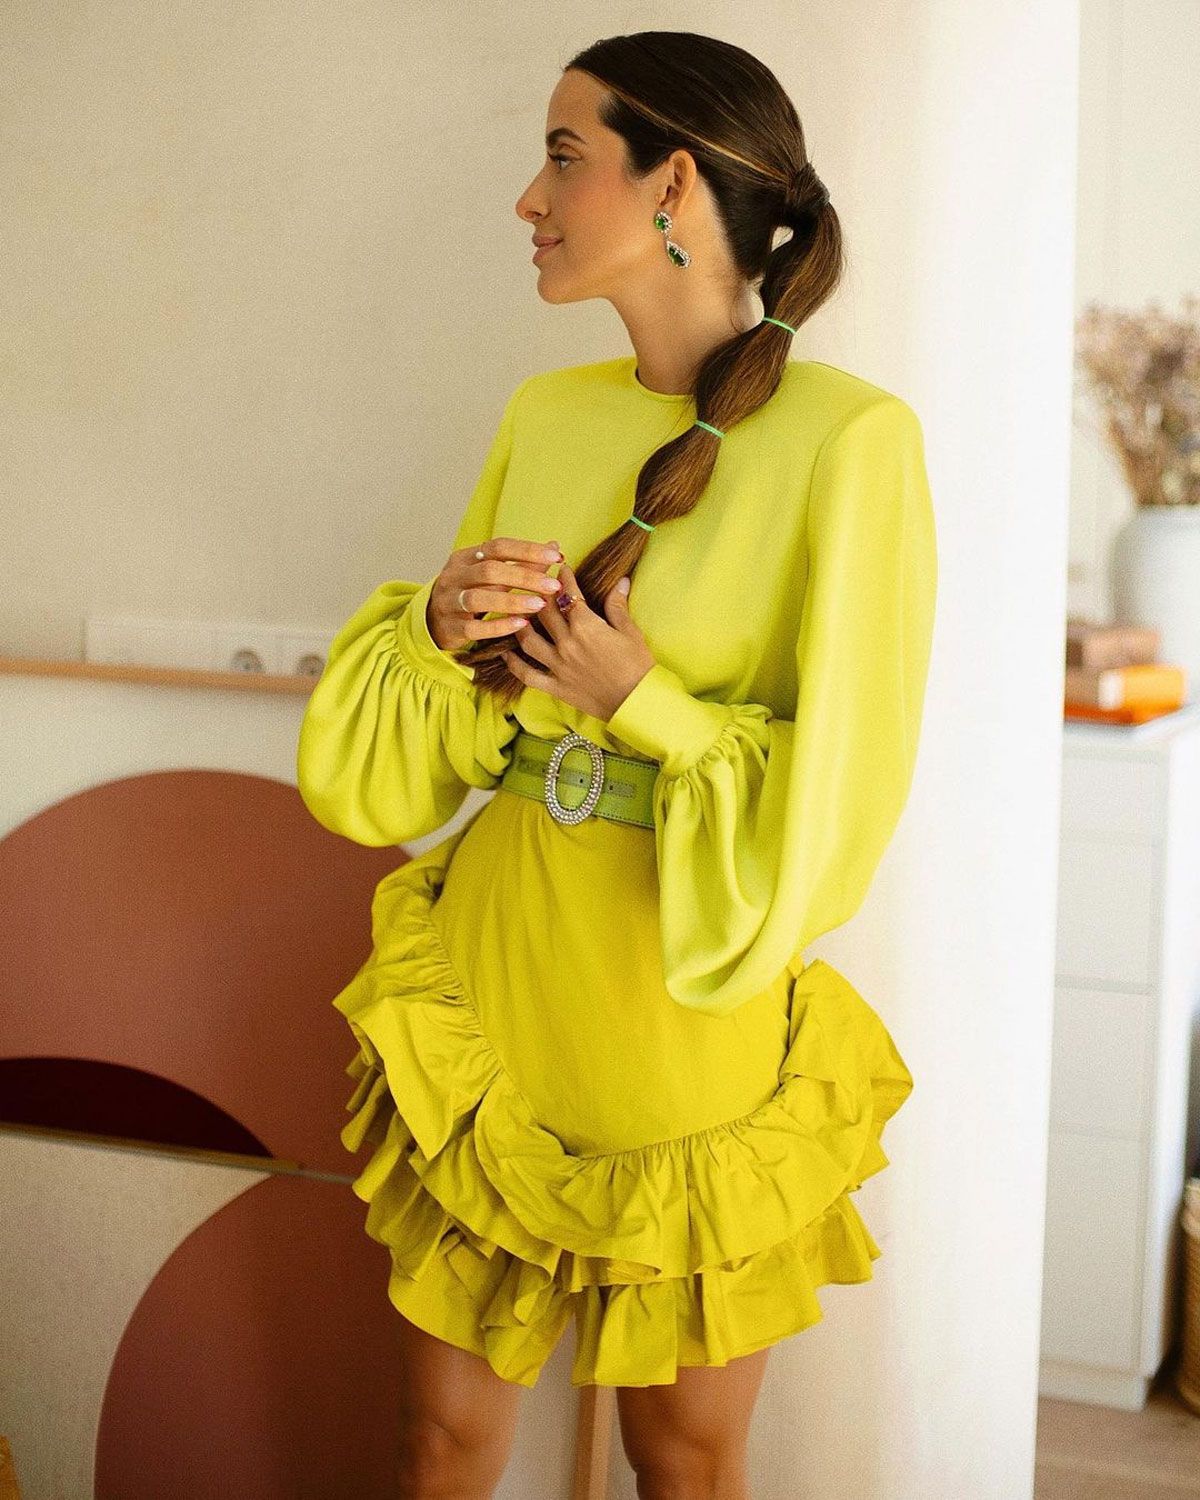 La 'influencer' María Fernández Rubíes con vestido de invitada Redondo Brand